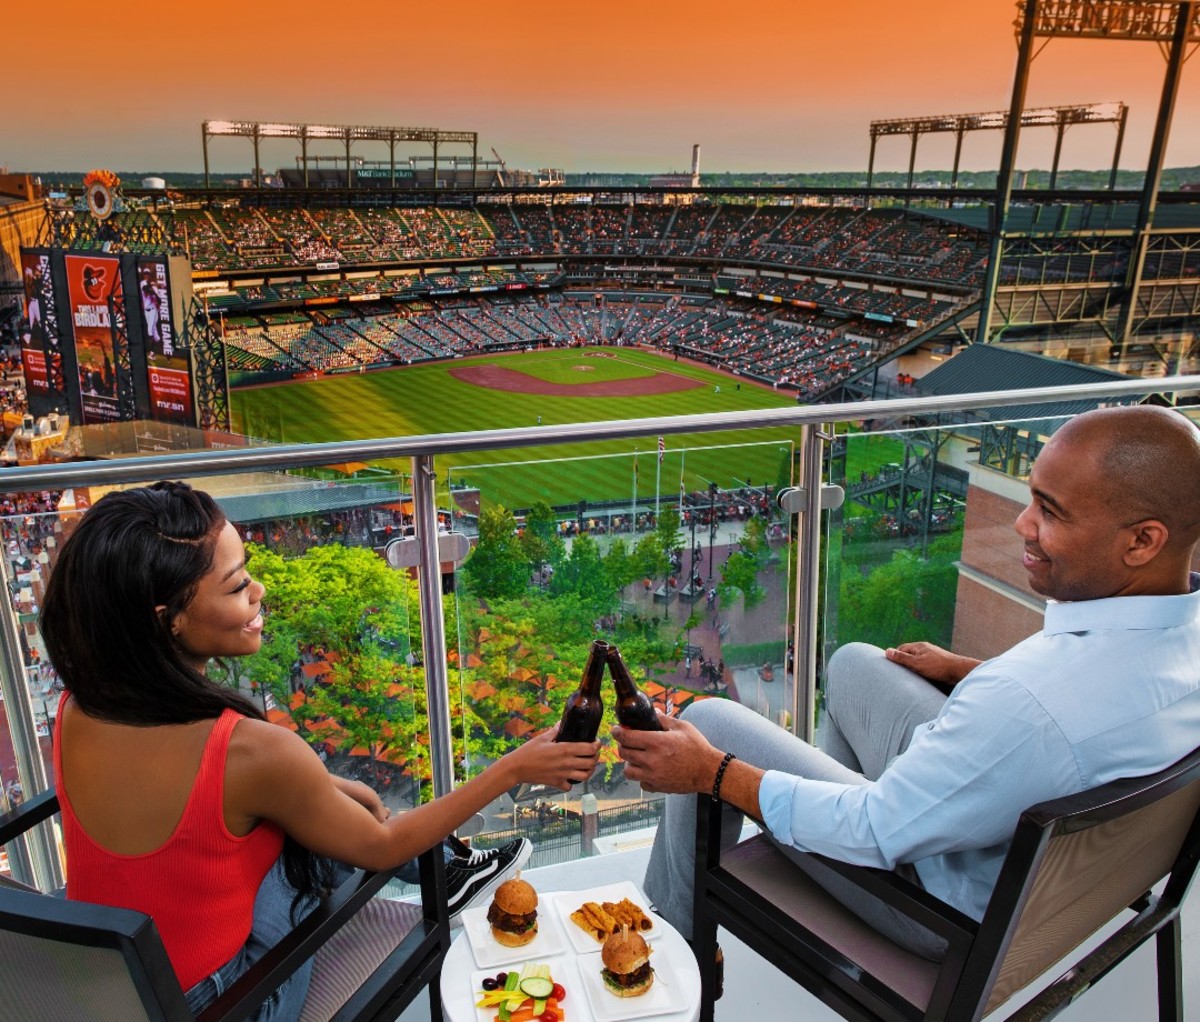 Black couple cheersing beers on balcony overlooking baseball stadium